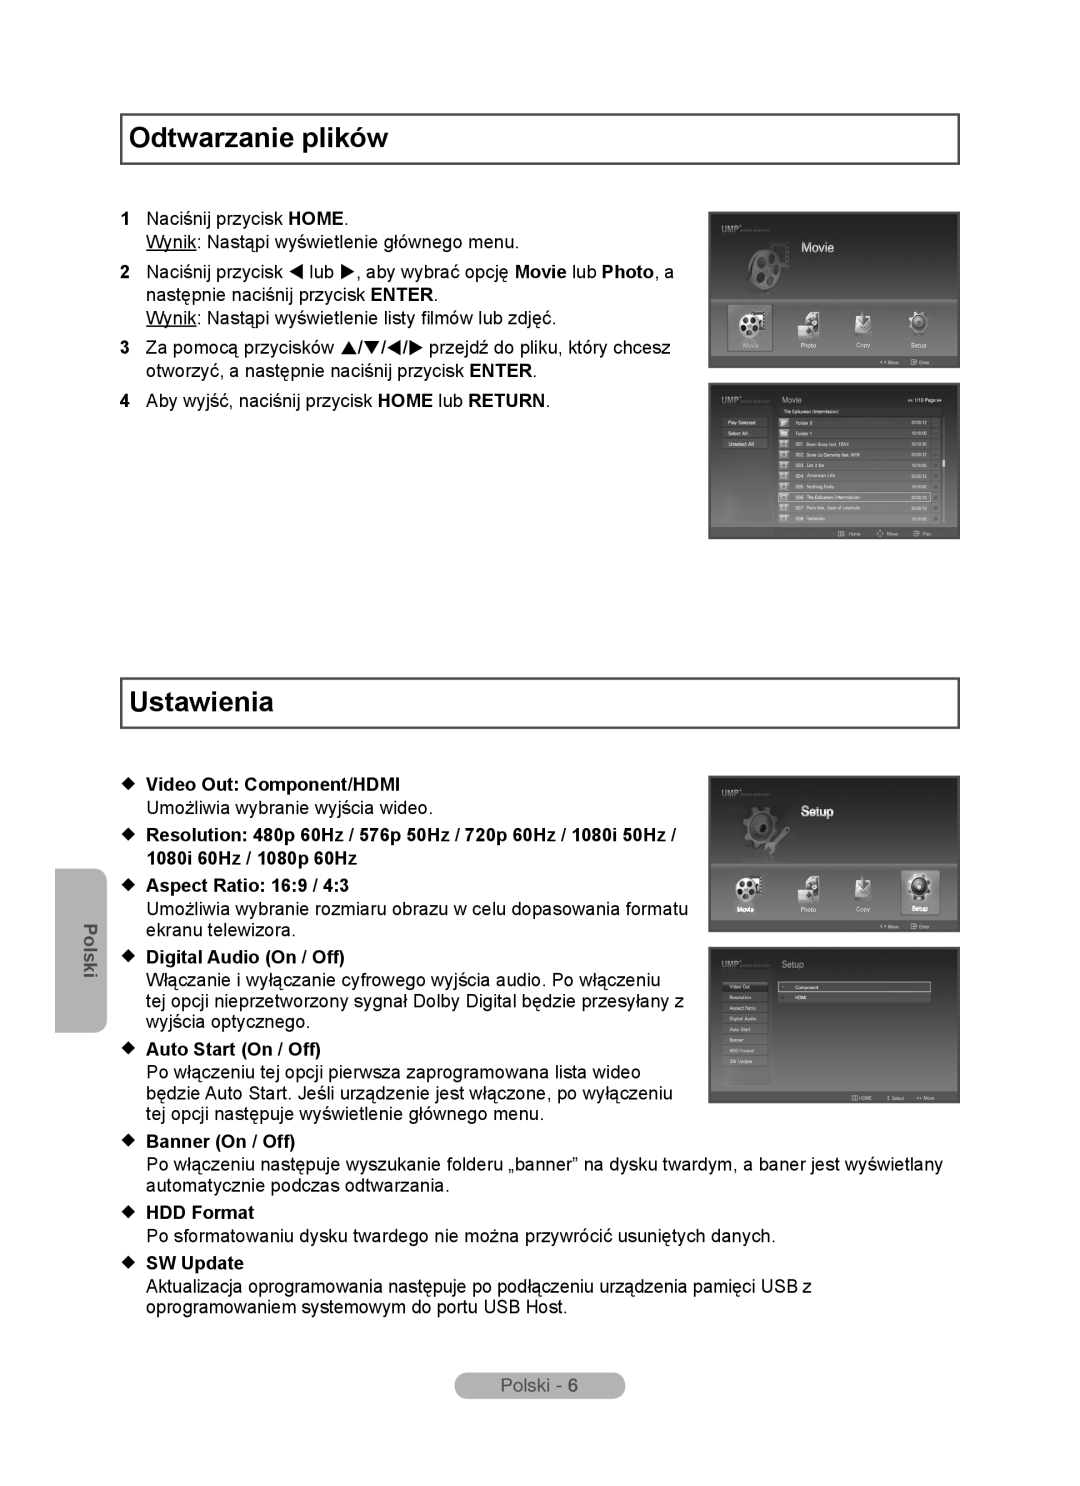 Samsung MR-16SB2 Odtwarzanie plików, Ustawienia, Polski,  Video Out Component/HDMI,  Aspect Ratio 169,  Banner On / Off 